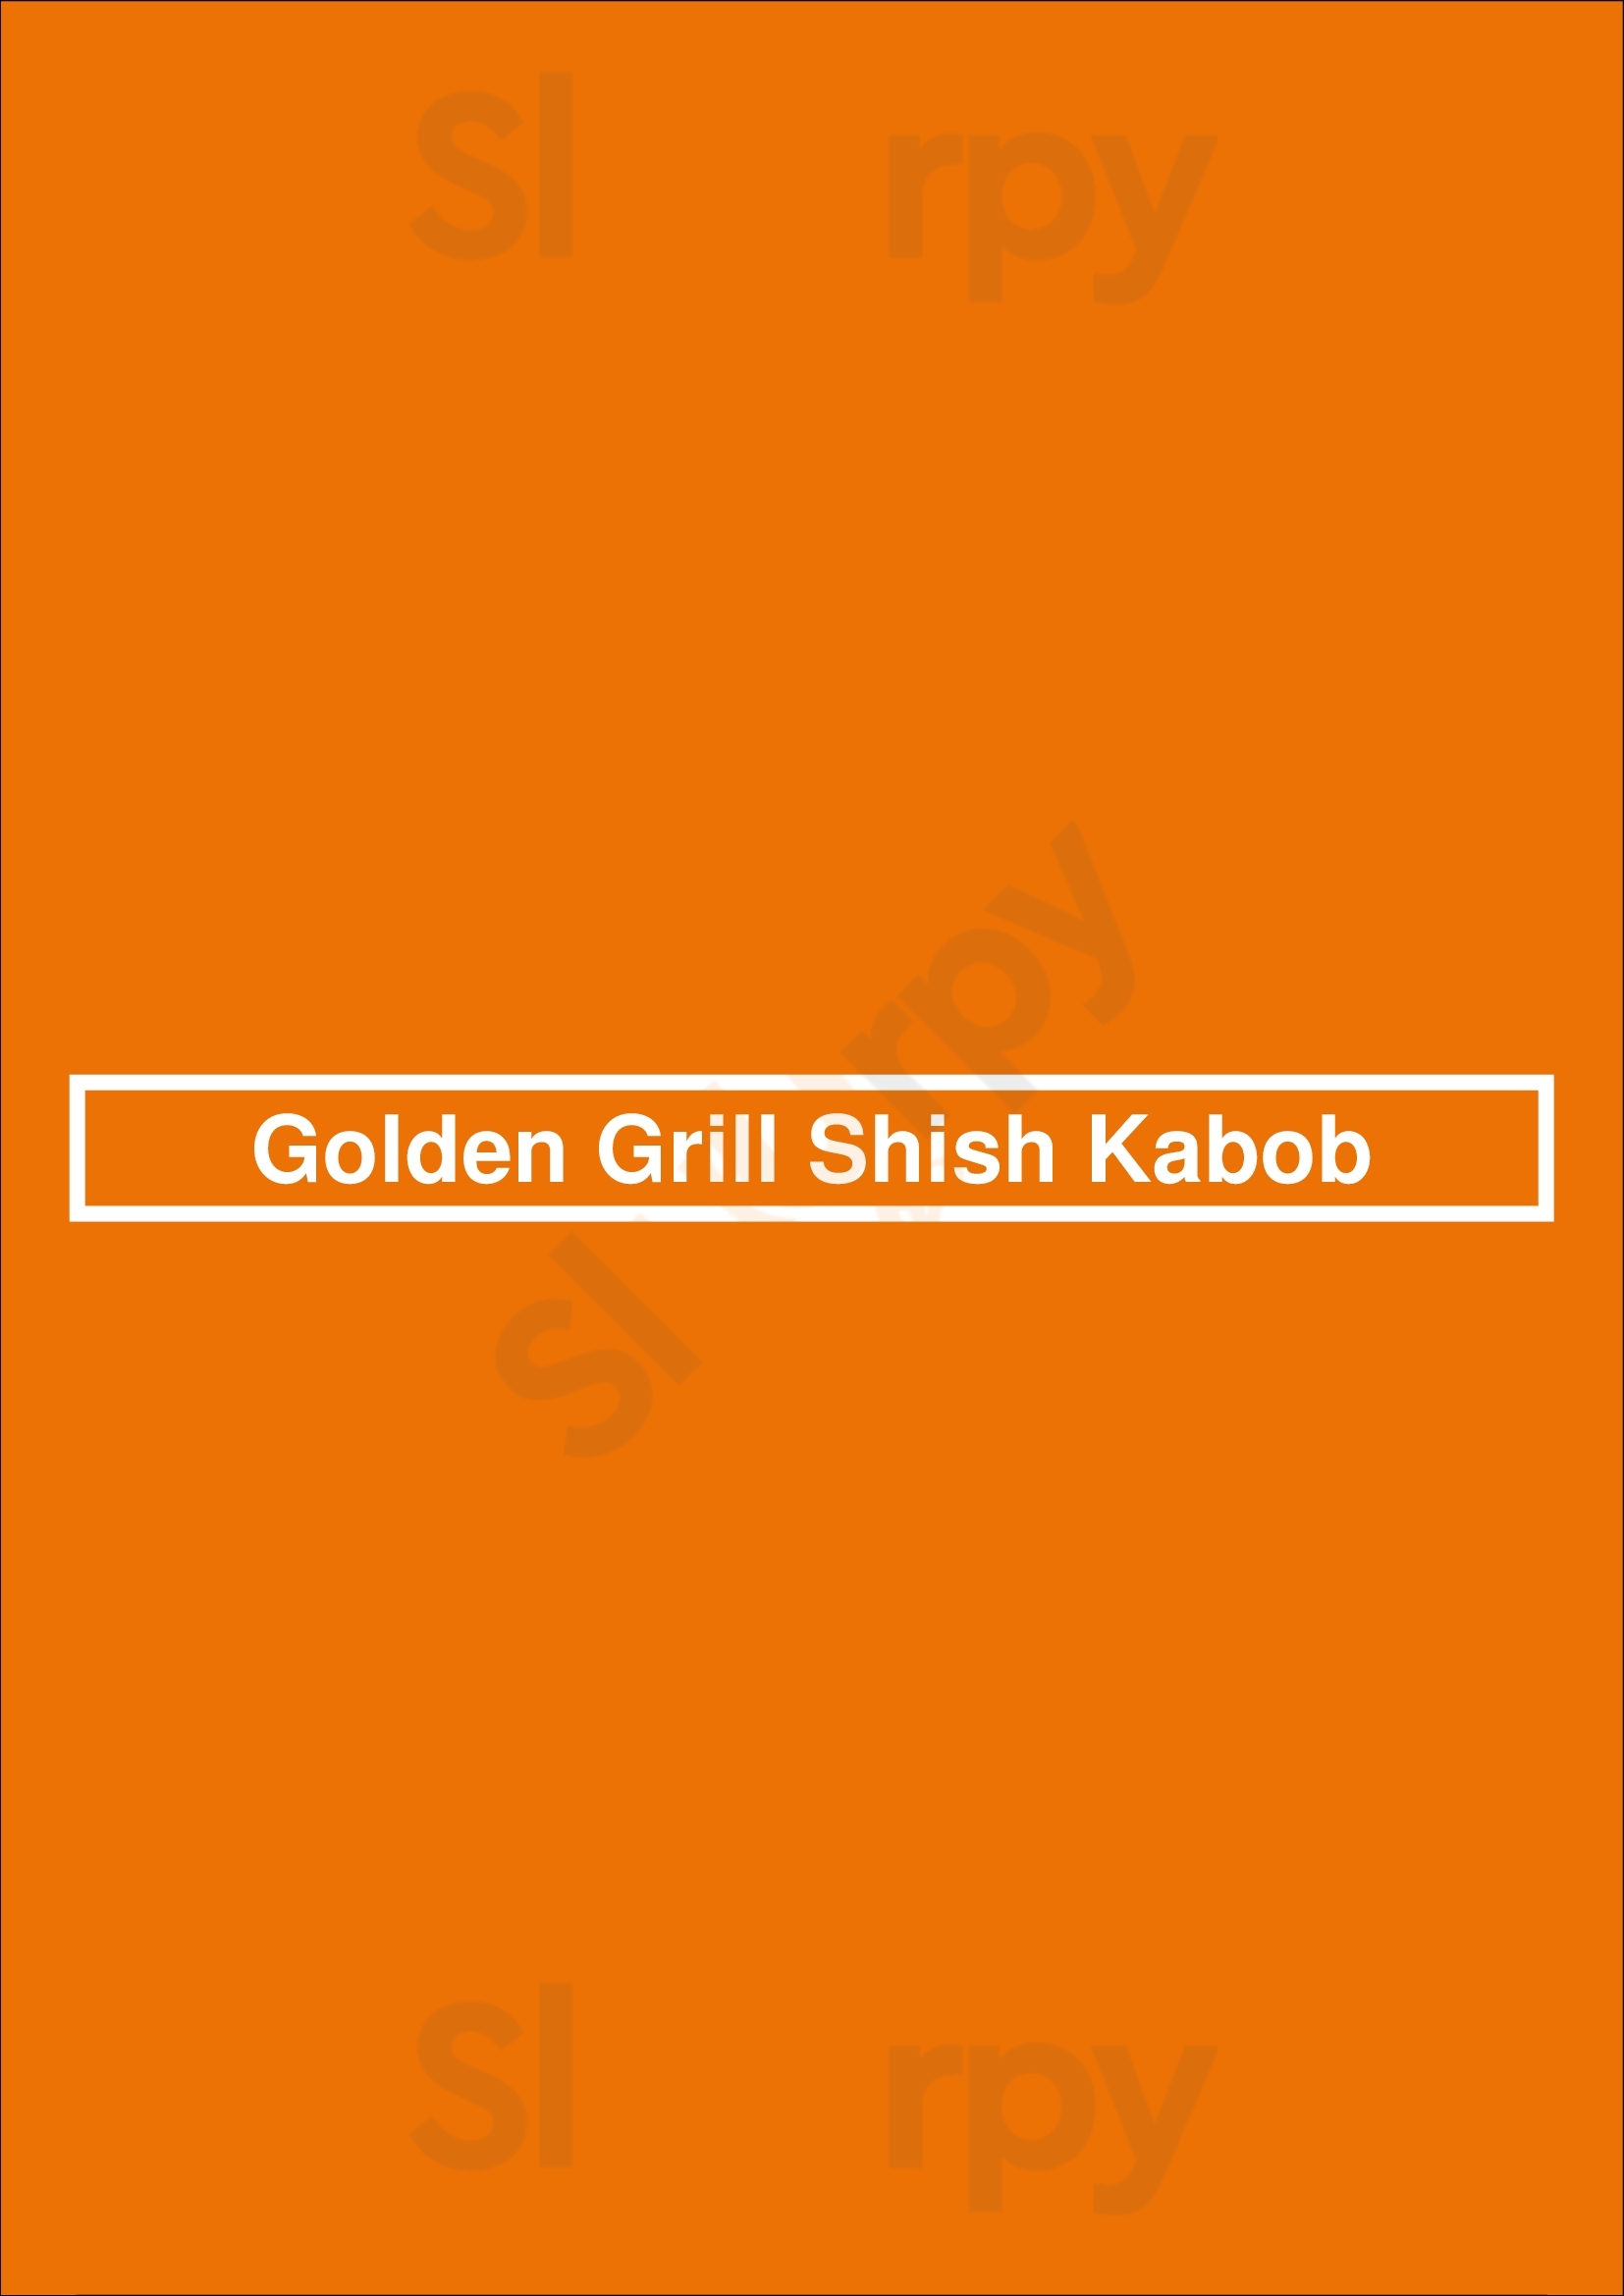 Golden Grill Shish Kabob Pasadena Menu - 1